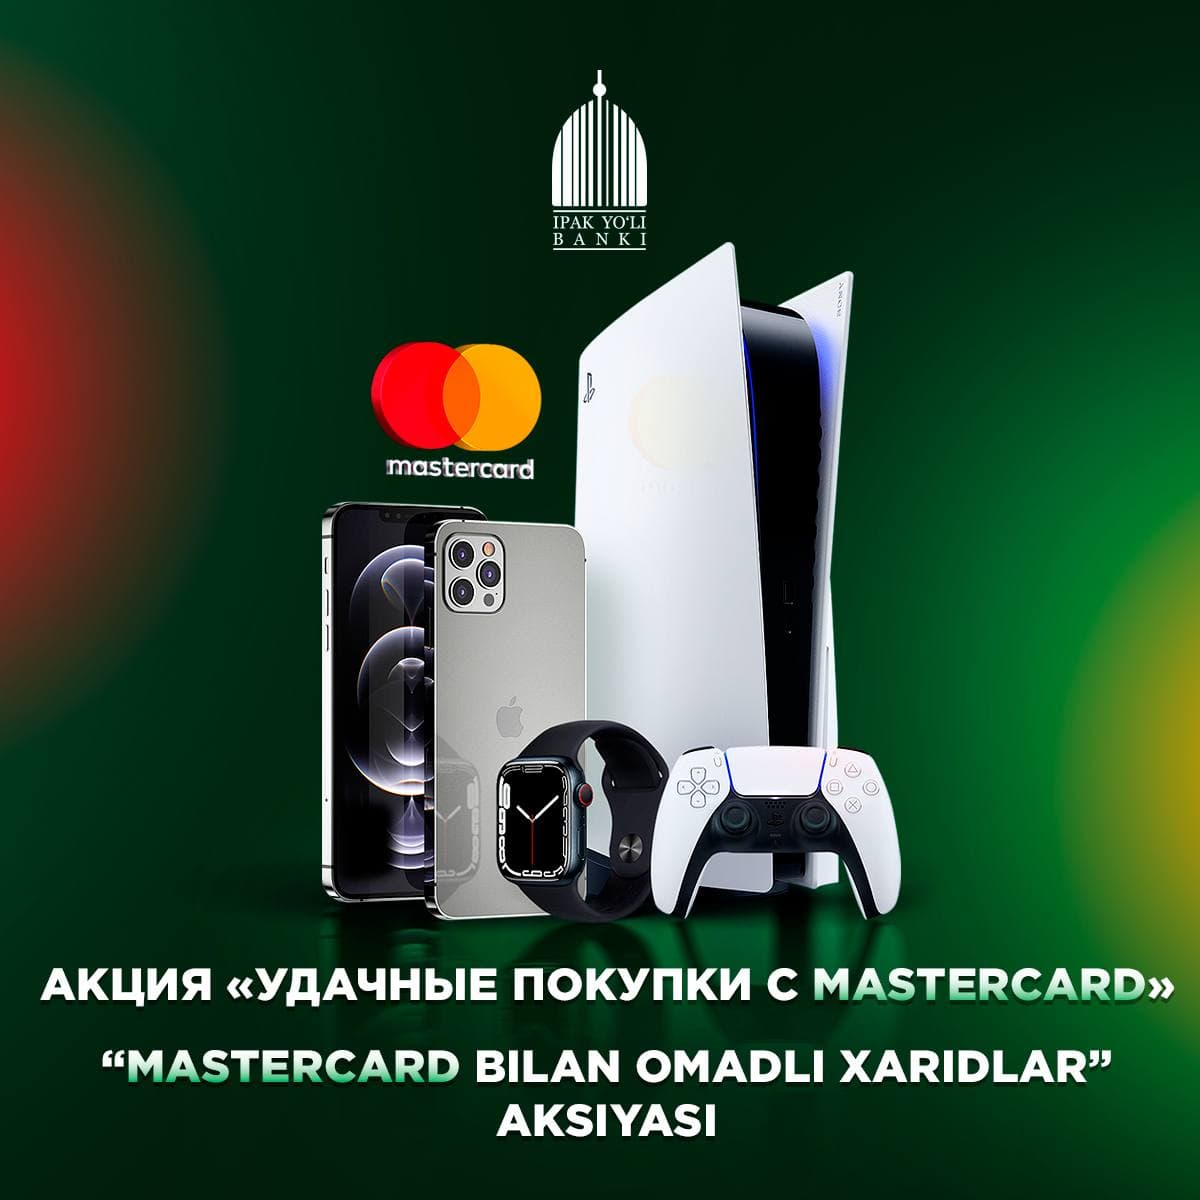 Удачные покупки с Mastercard!